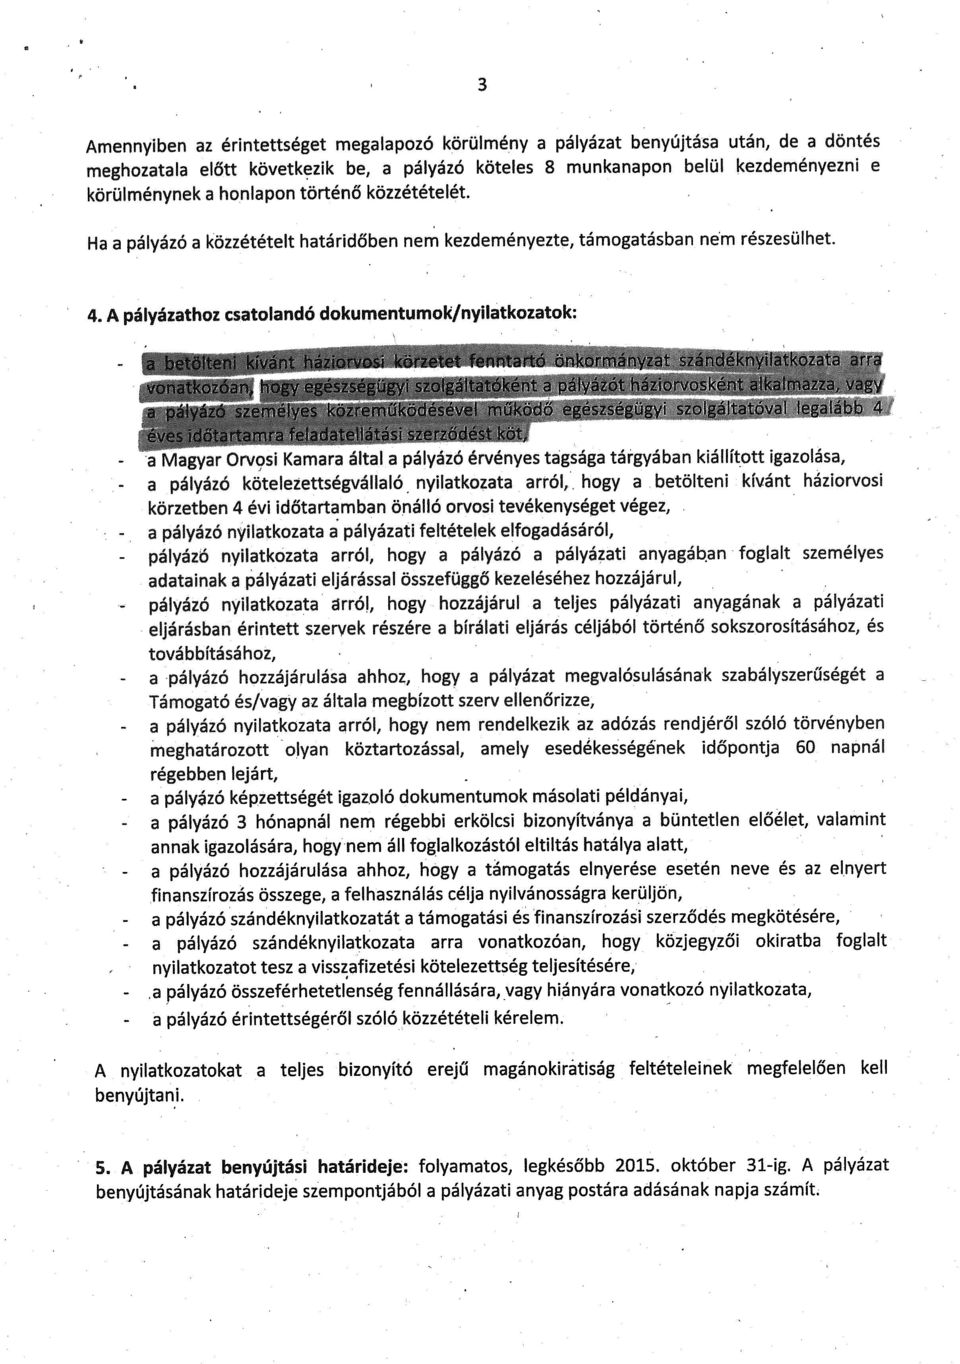 A pályázathoz csatolandó dokumentumok/nyilatkozatok: - pályázó Magyar Orvosi Kamara altal a palyazó ervenyes tagsaga targyaban kialhtott igazolasa, pályázó kötelezettségvállaló nyilatkozata arról,